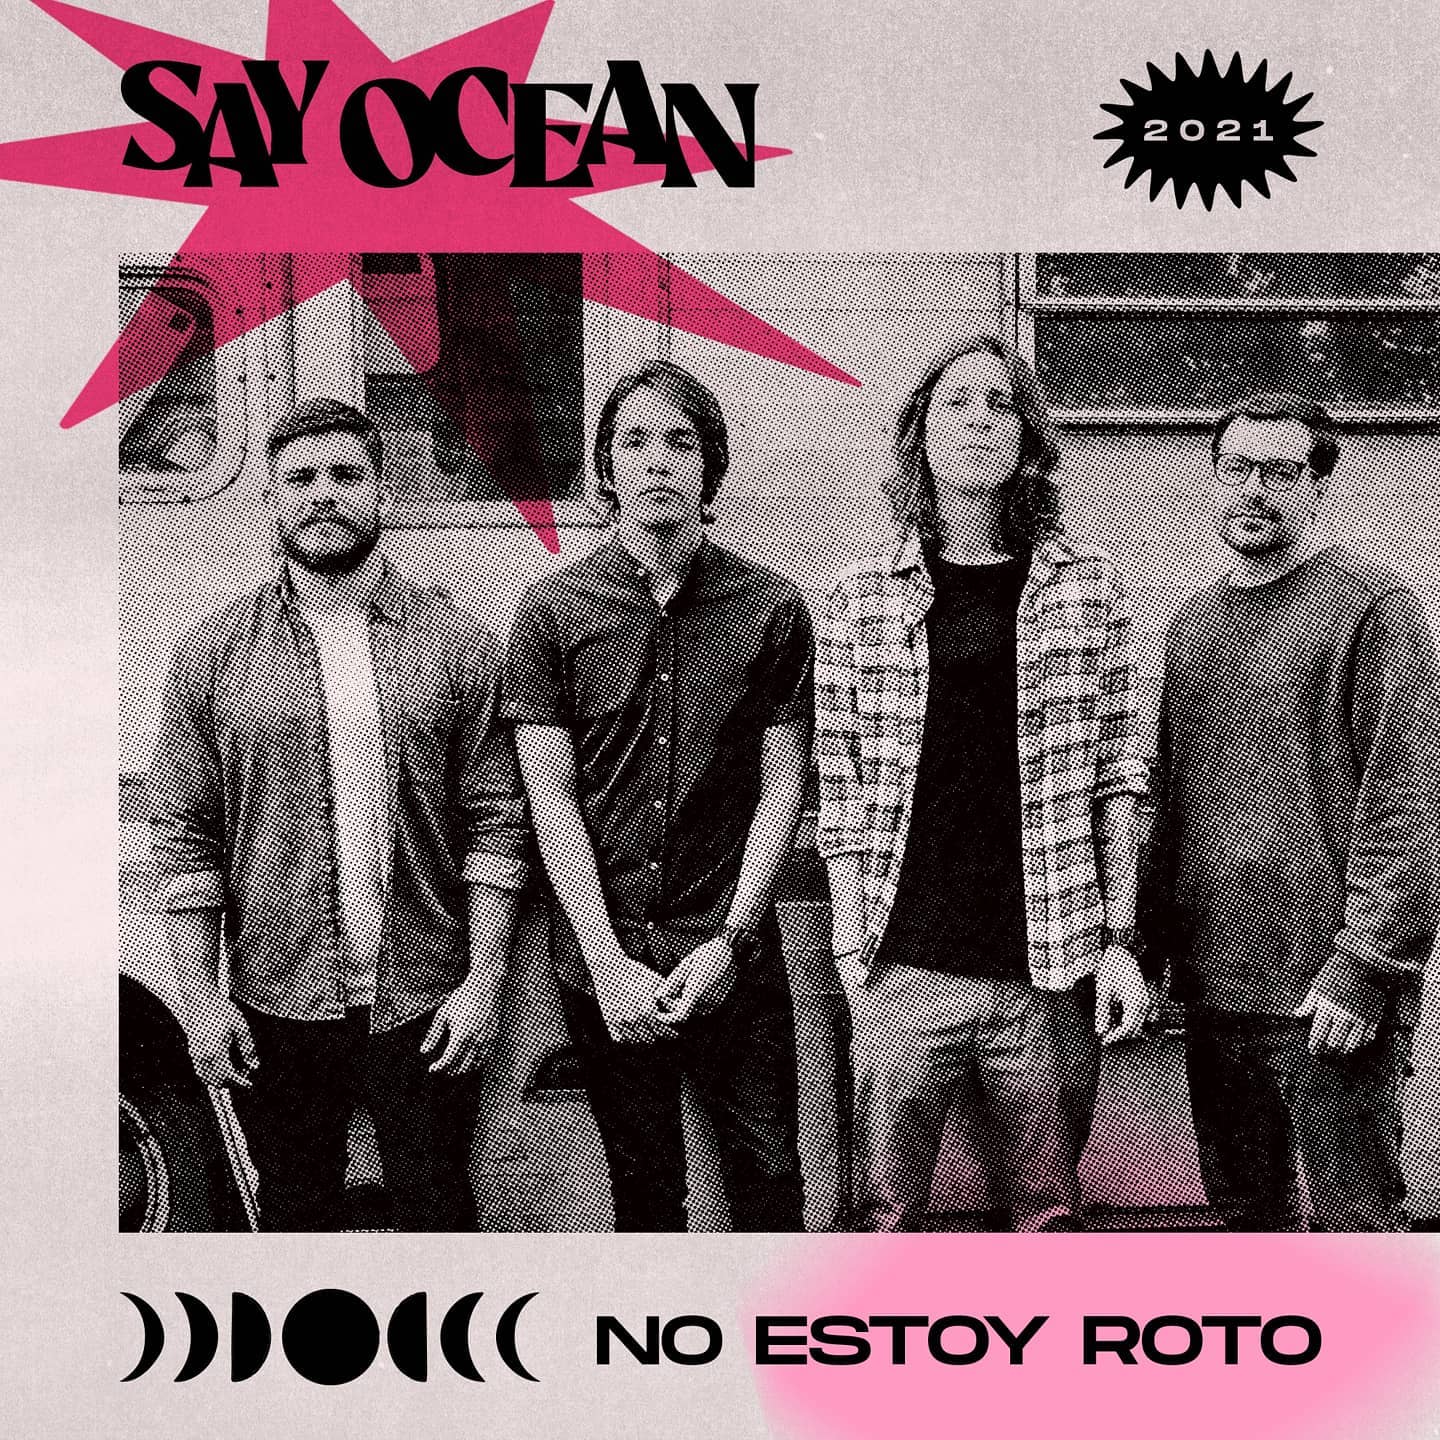 Say Ocean anuncia el lanzamiento de 'No estoy roto', el primer sencillo de su segundo album 'Perfectas Condiciones' | Tropical Punk Records